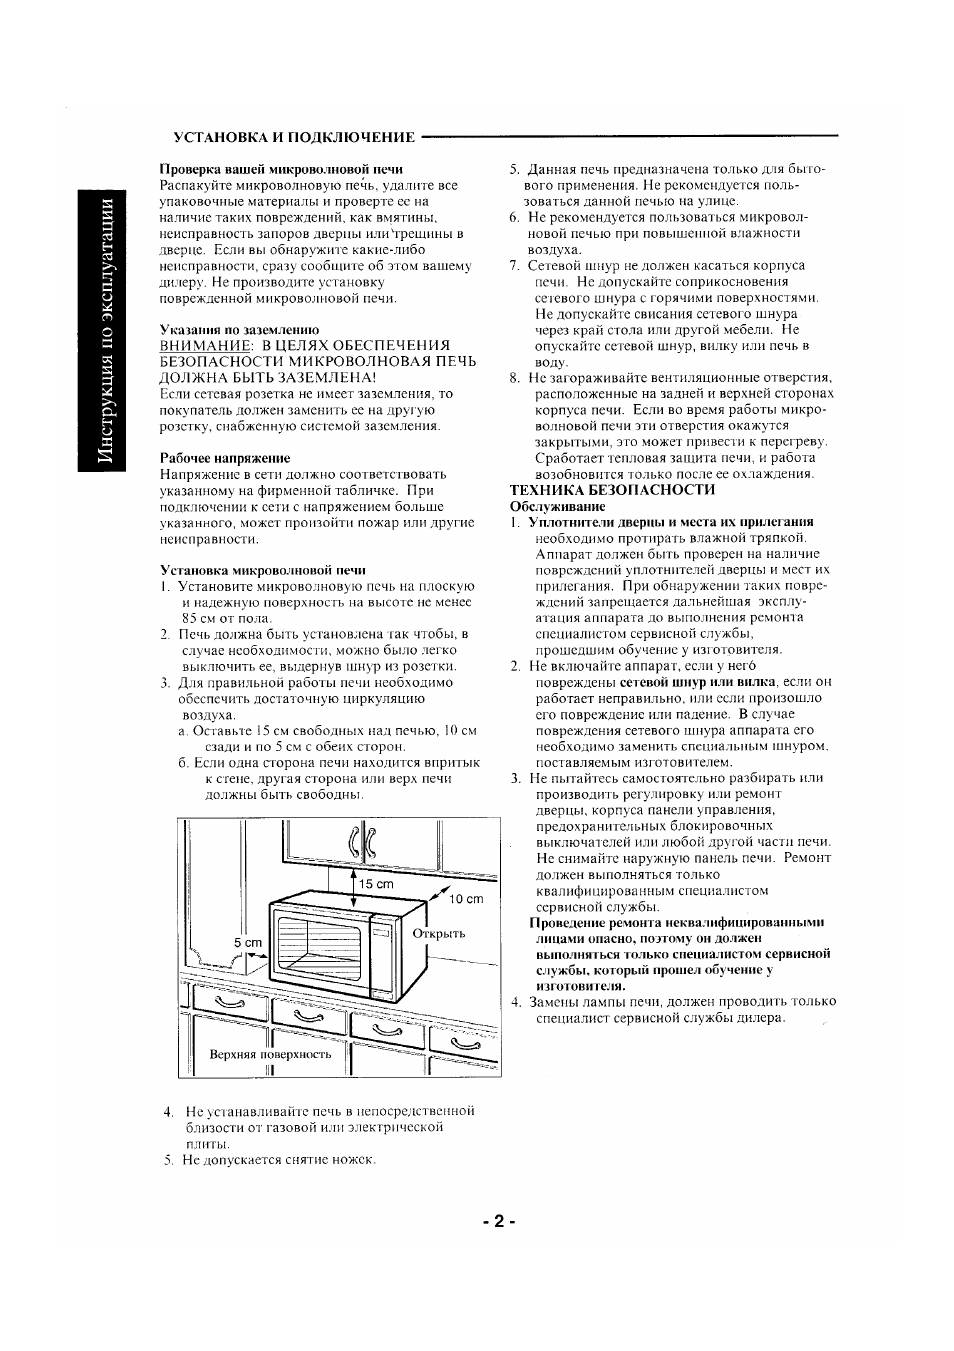 Базовые правила подключения кухонной техники к электросети